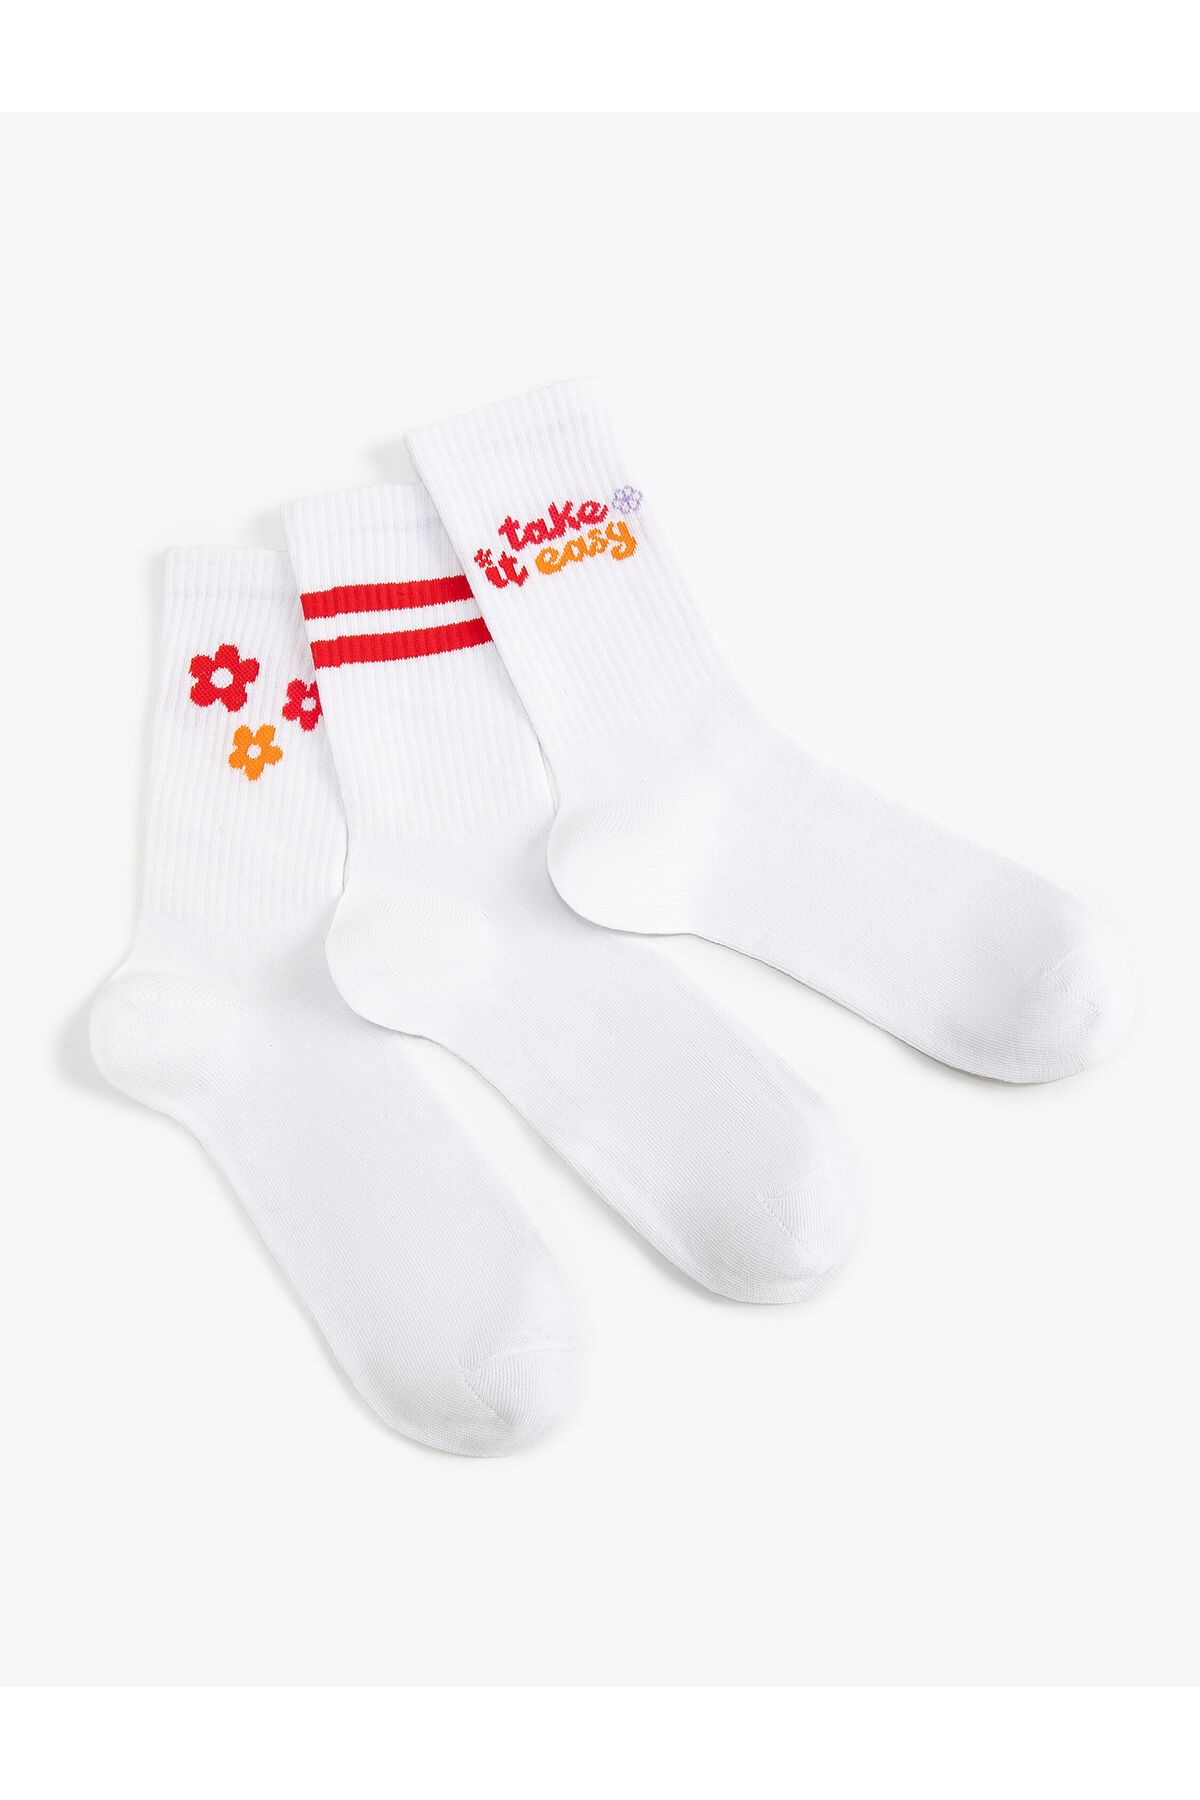 Koton Çiçekli 3'lü Soket Çorap Seti Slogan Desenli